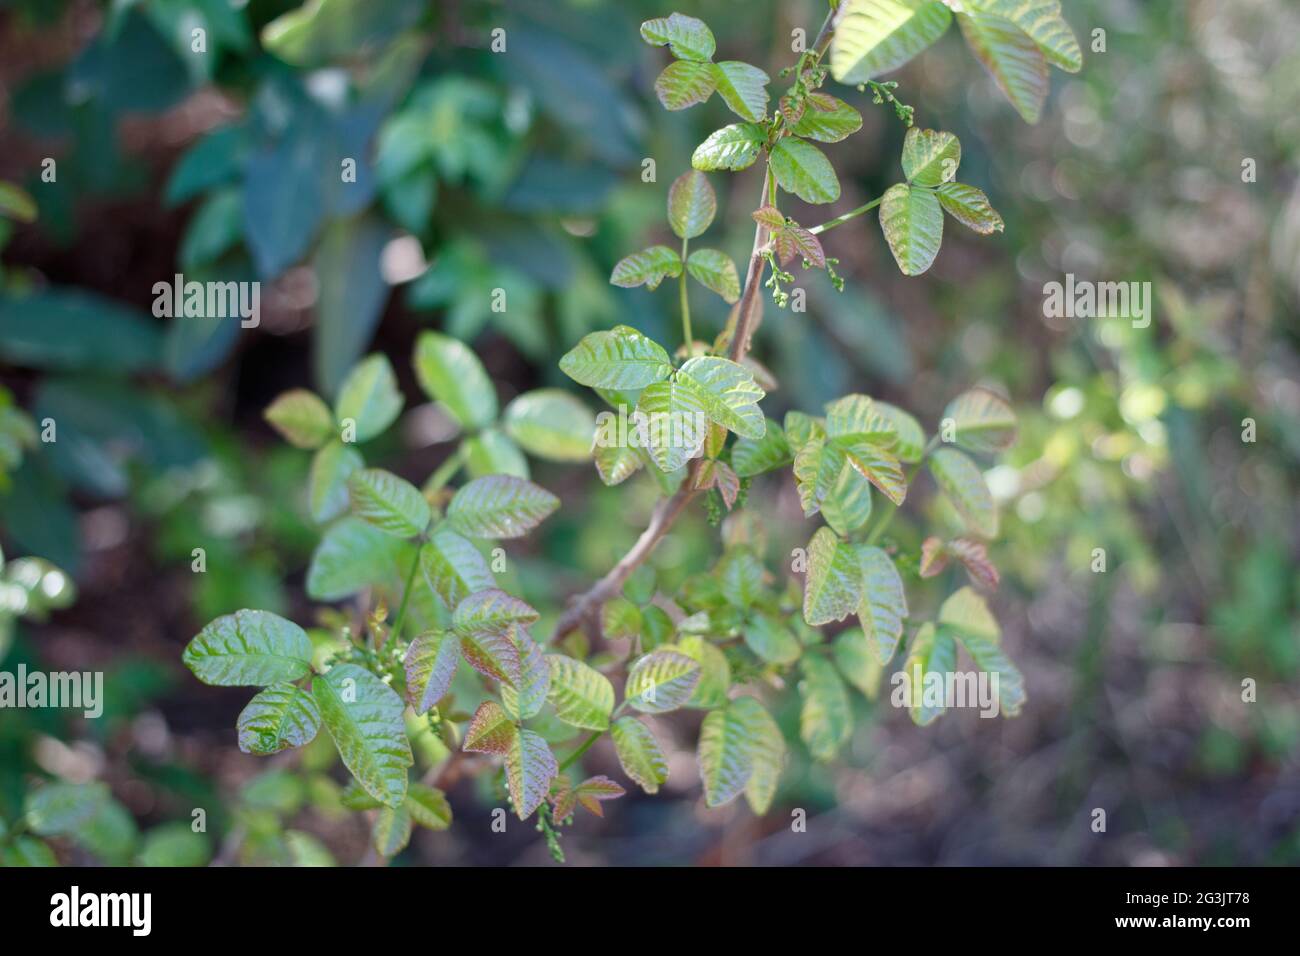 Pinnately trifoliate lobate leaves of Poison Oak, Toxicodendron Diversilobum, Anacardiaceae, native in the Santa Monica Mountains, Springtime. Stock Photo